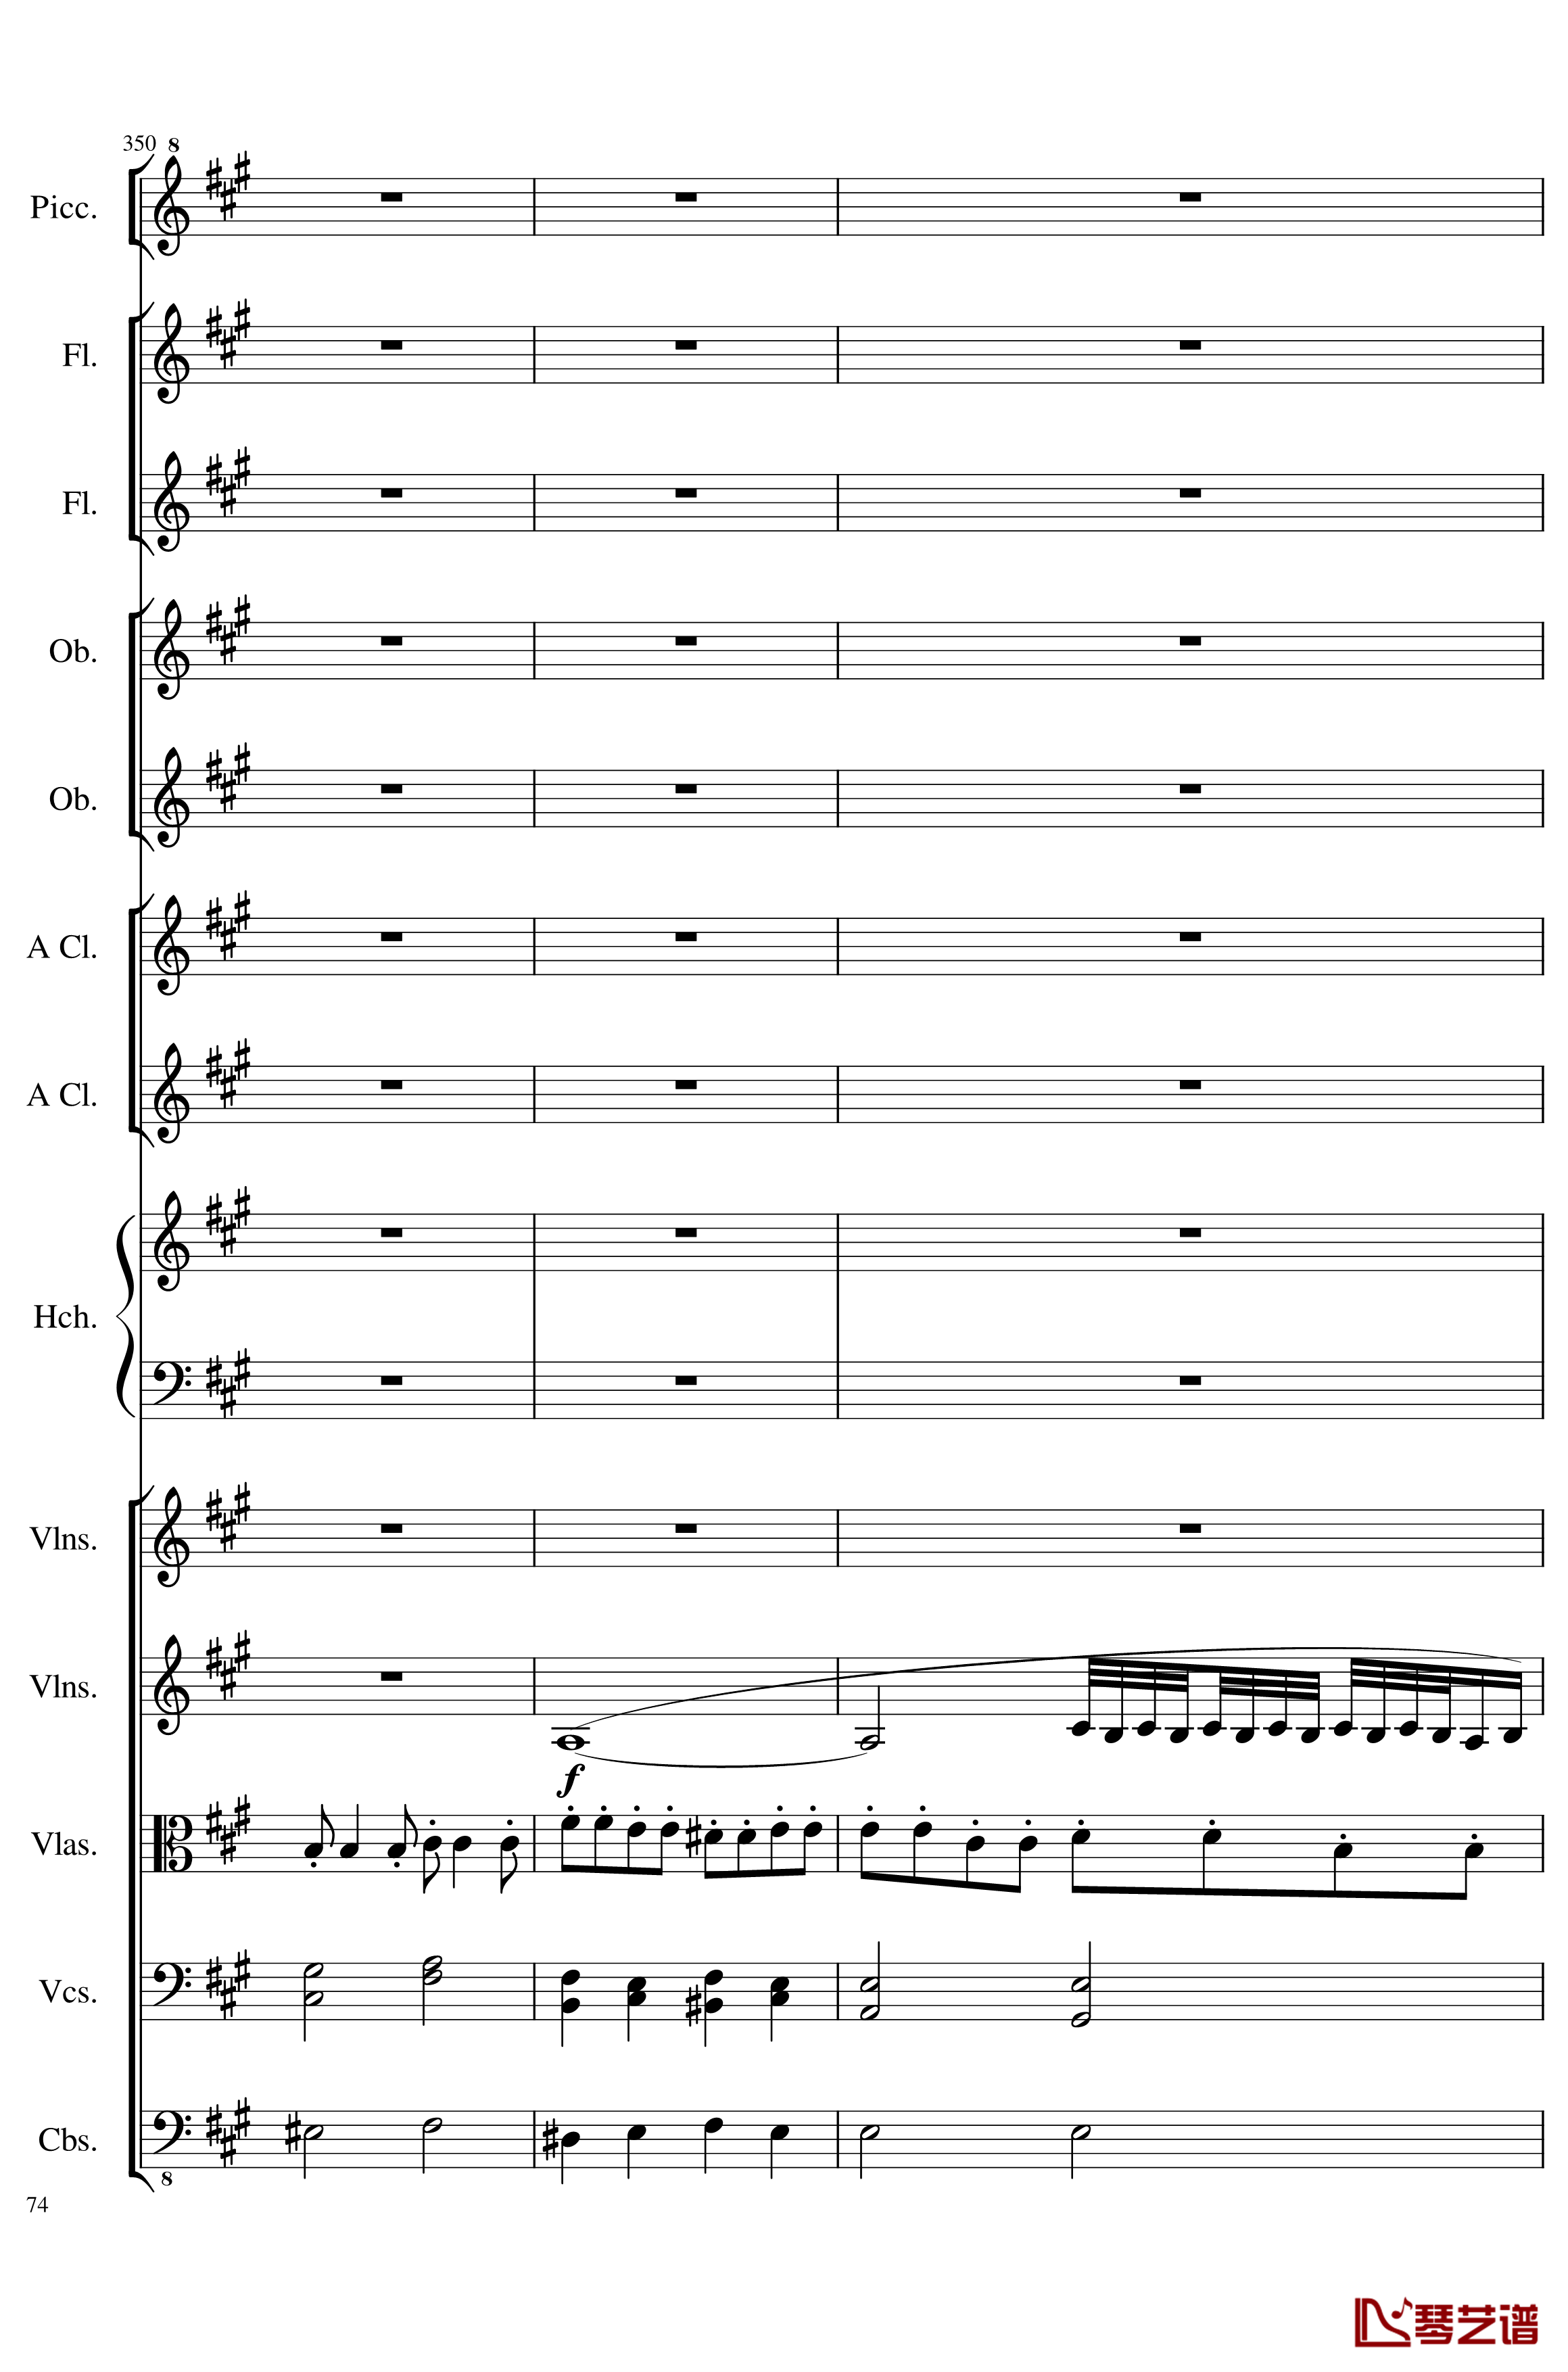 7 Contredanses No.1-7, Op.124钢琴谱-7首乡村舞曲，第一至第七，作品124-一个球74